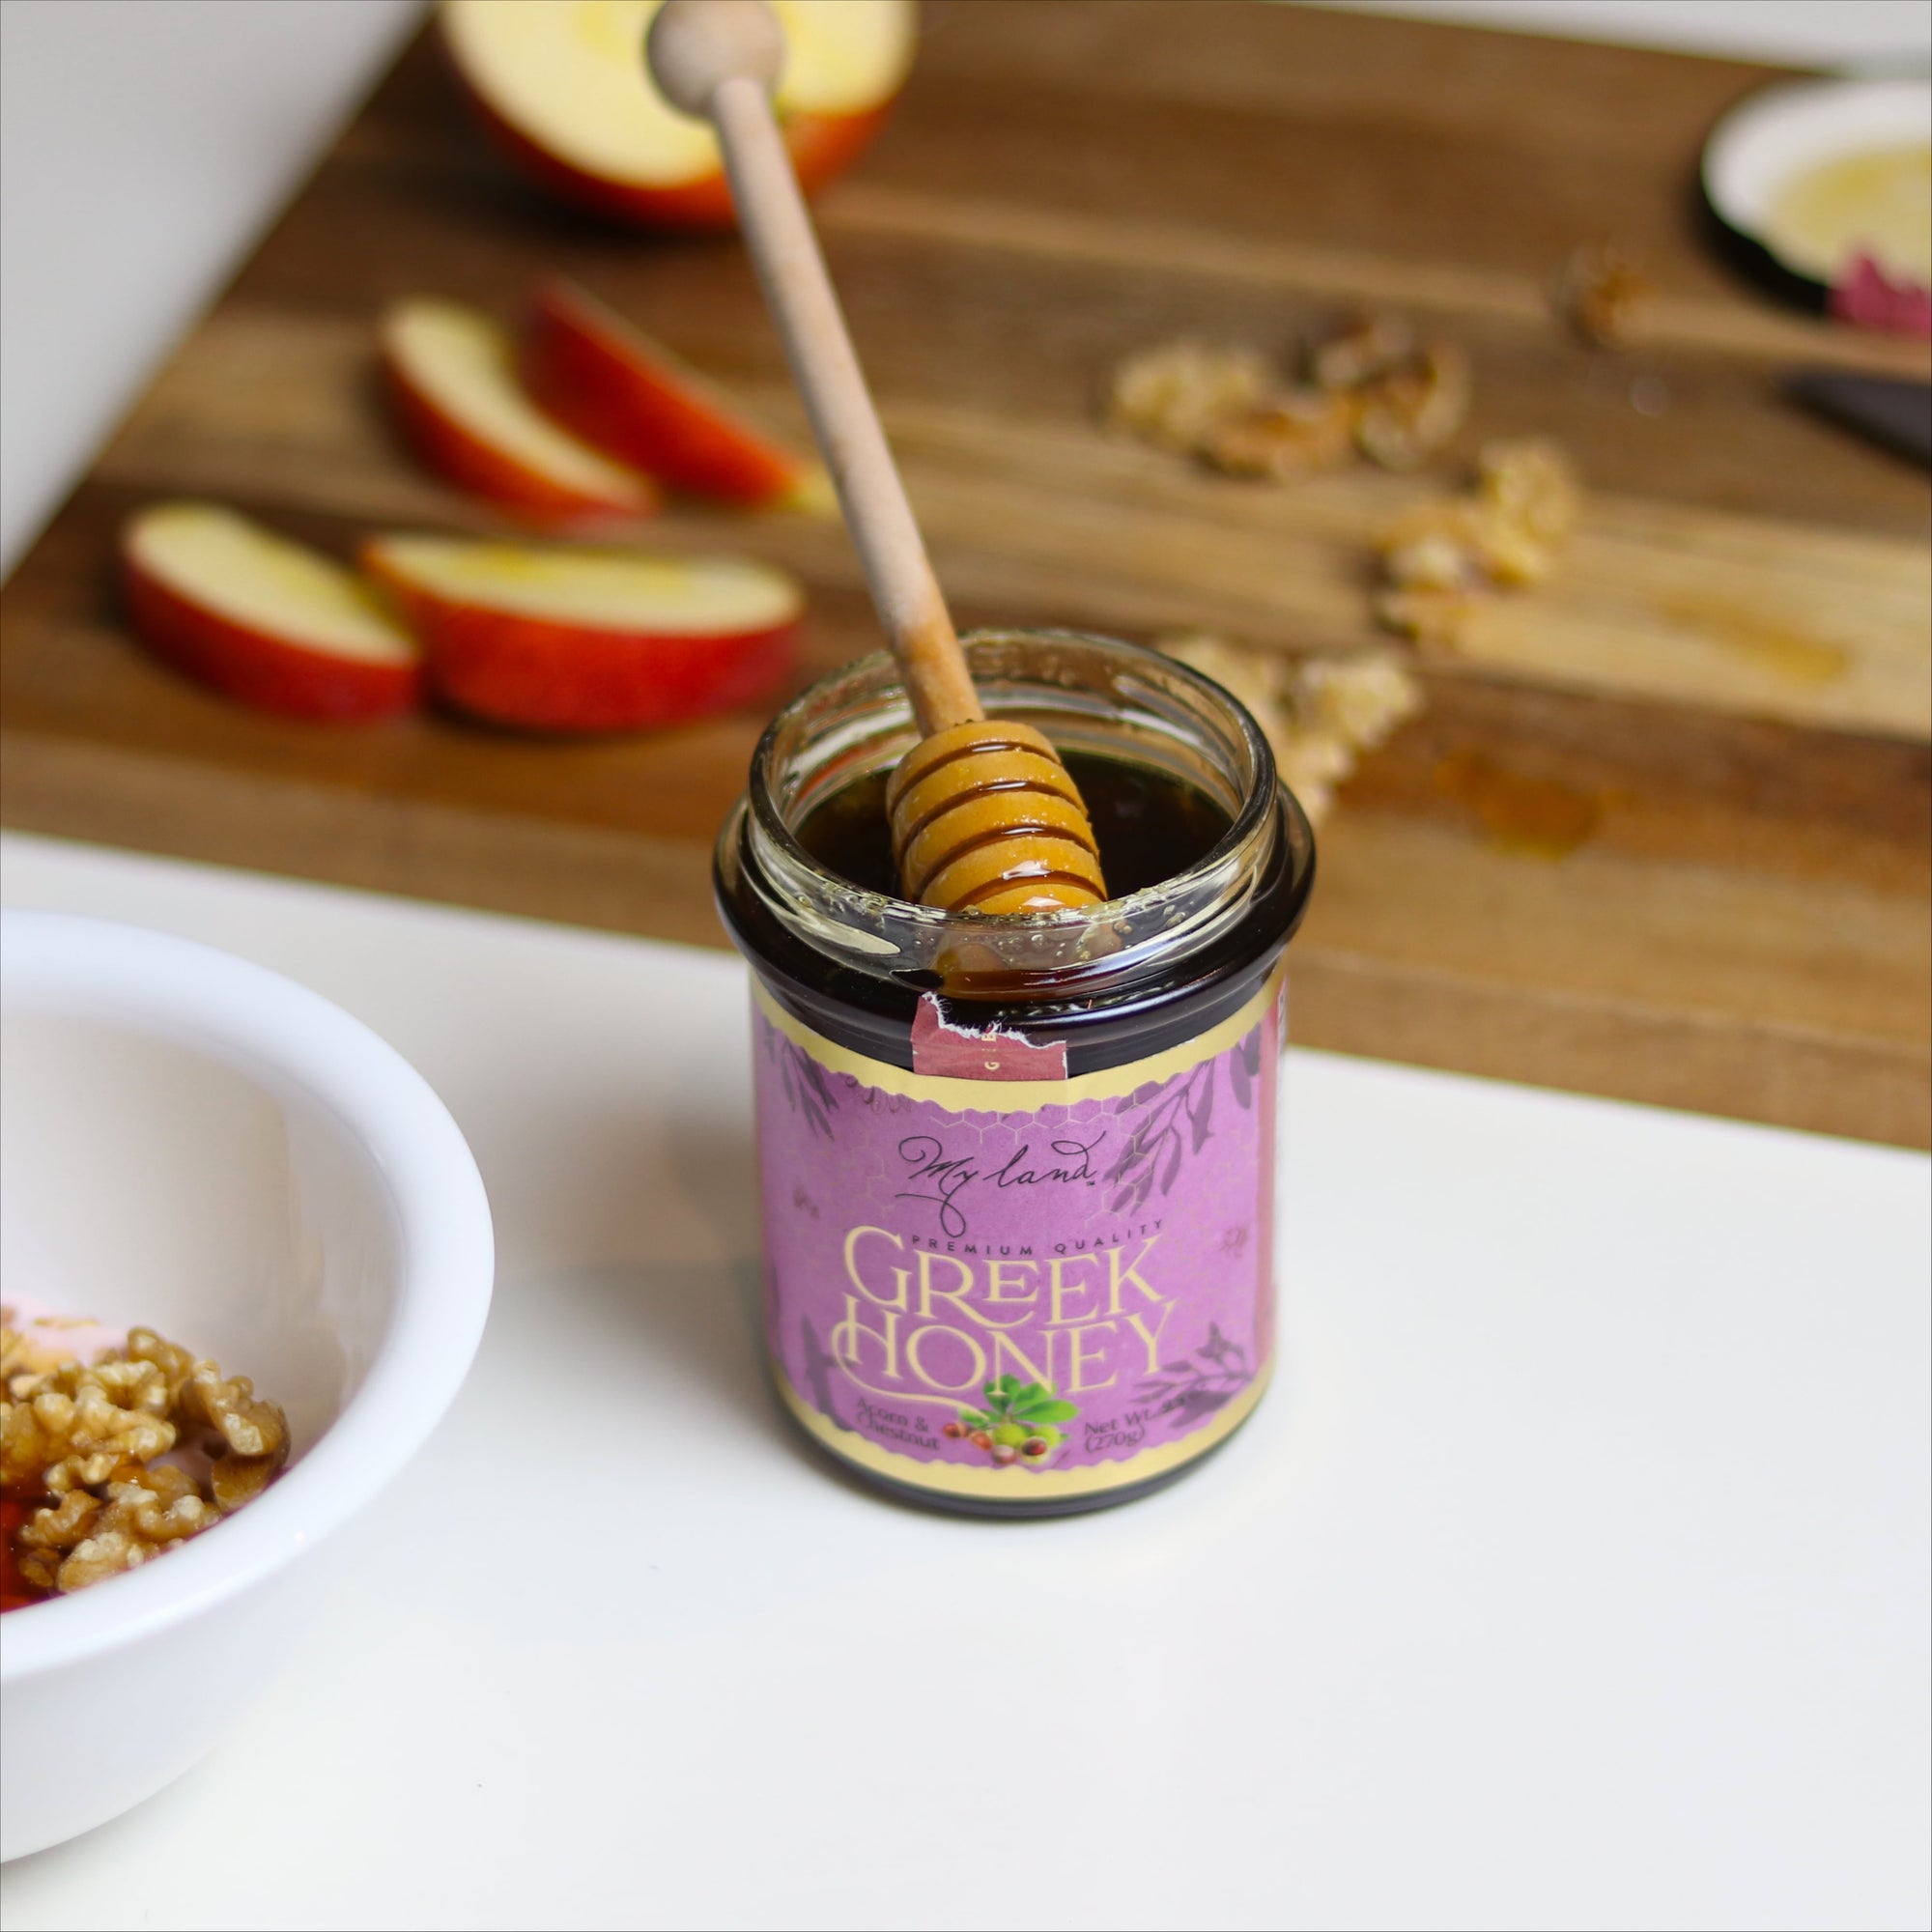 Acorn and Chestnut Greek Honey | My Land